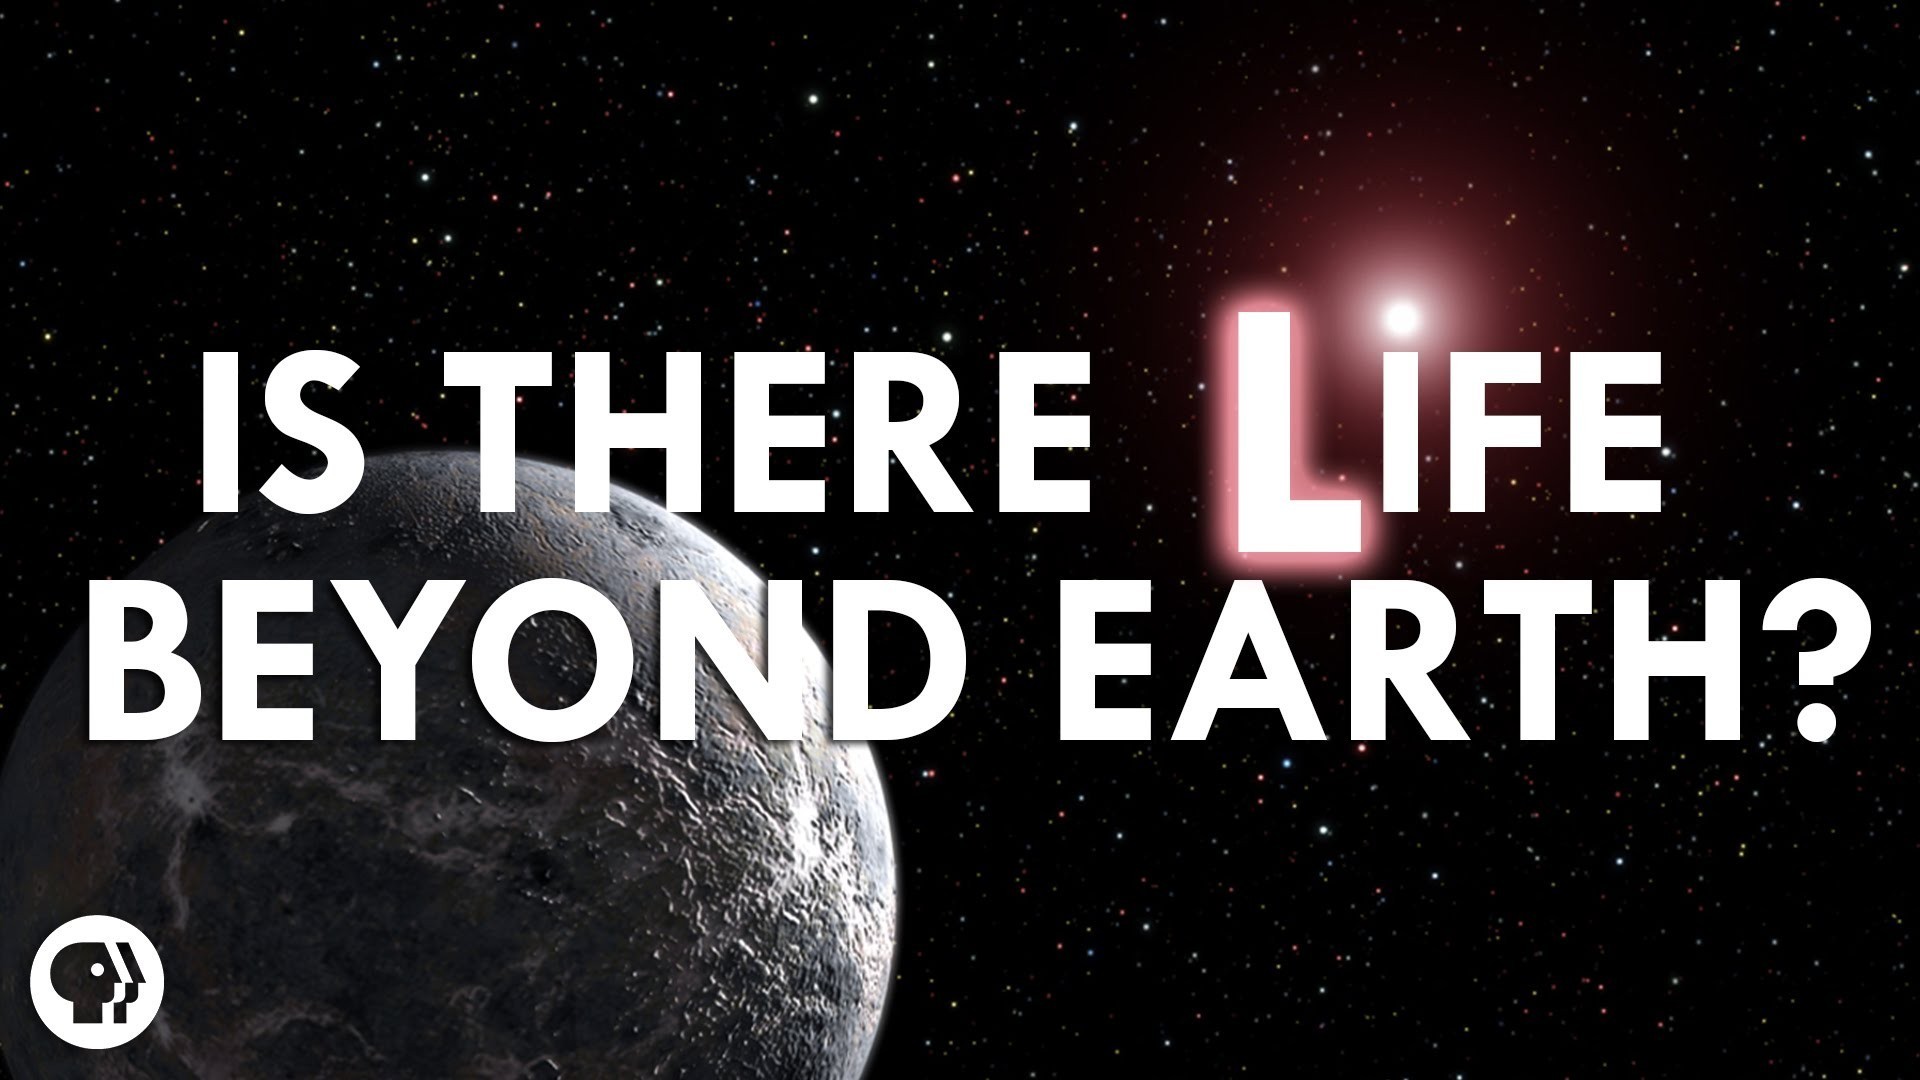 Πιστεύεις στην εξωγήινη ζωή;